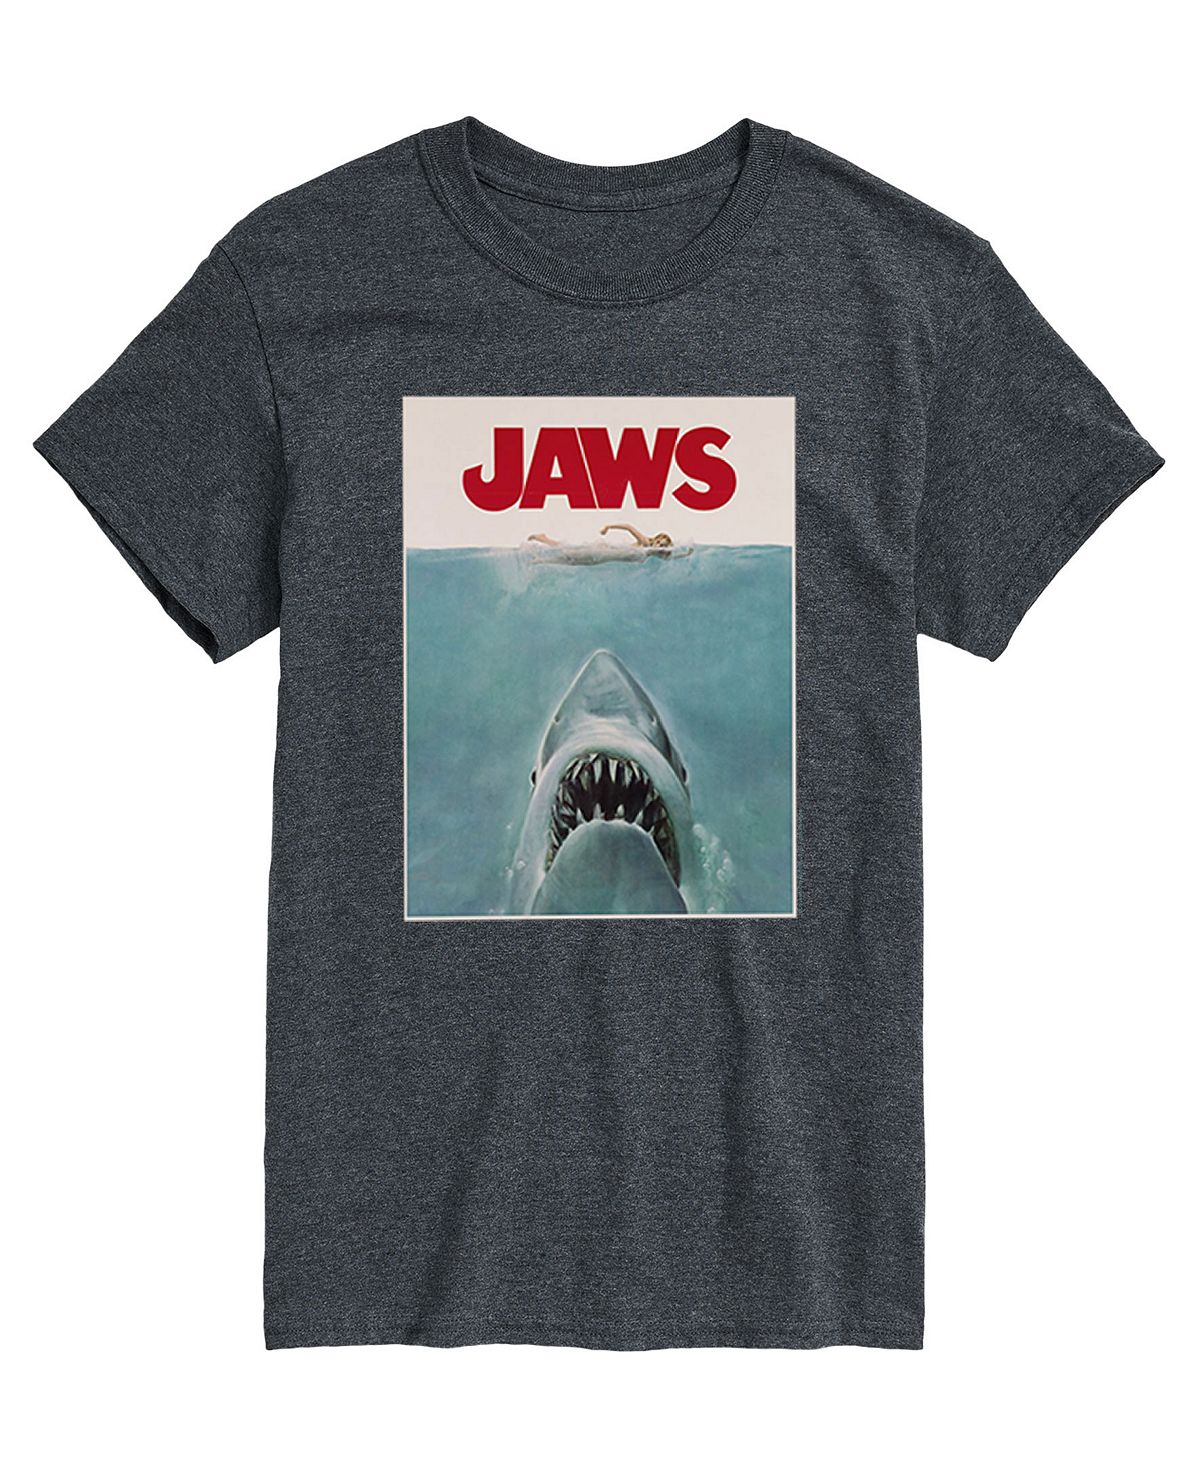 цена Мужская футболка с плакатом Jaws AIRWAVES